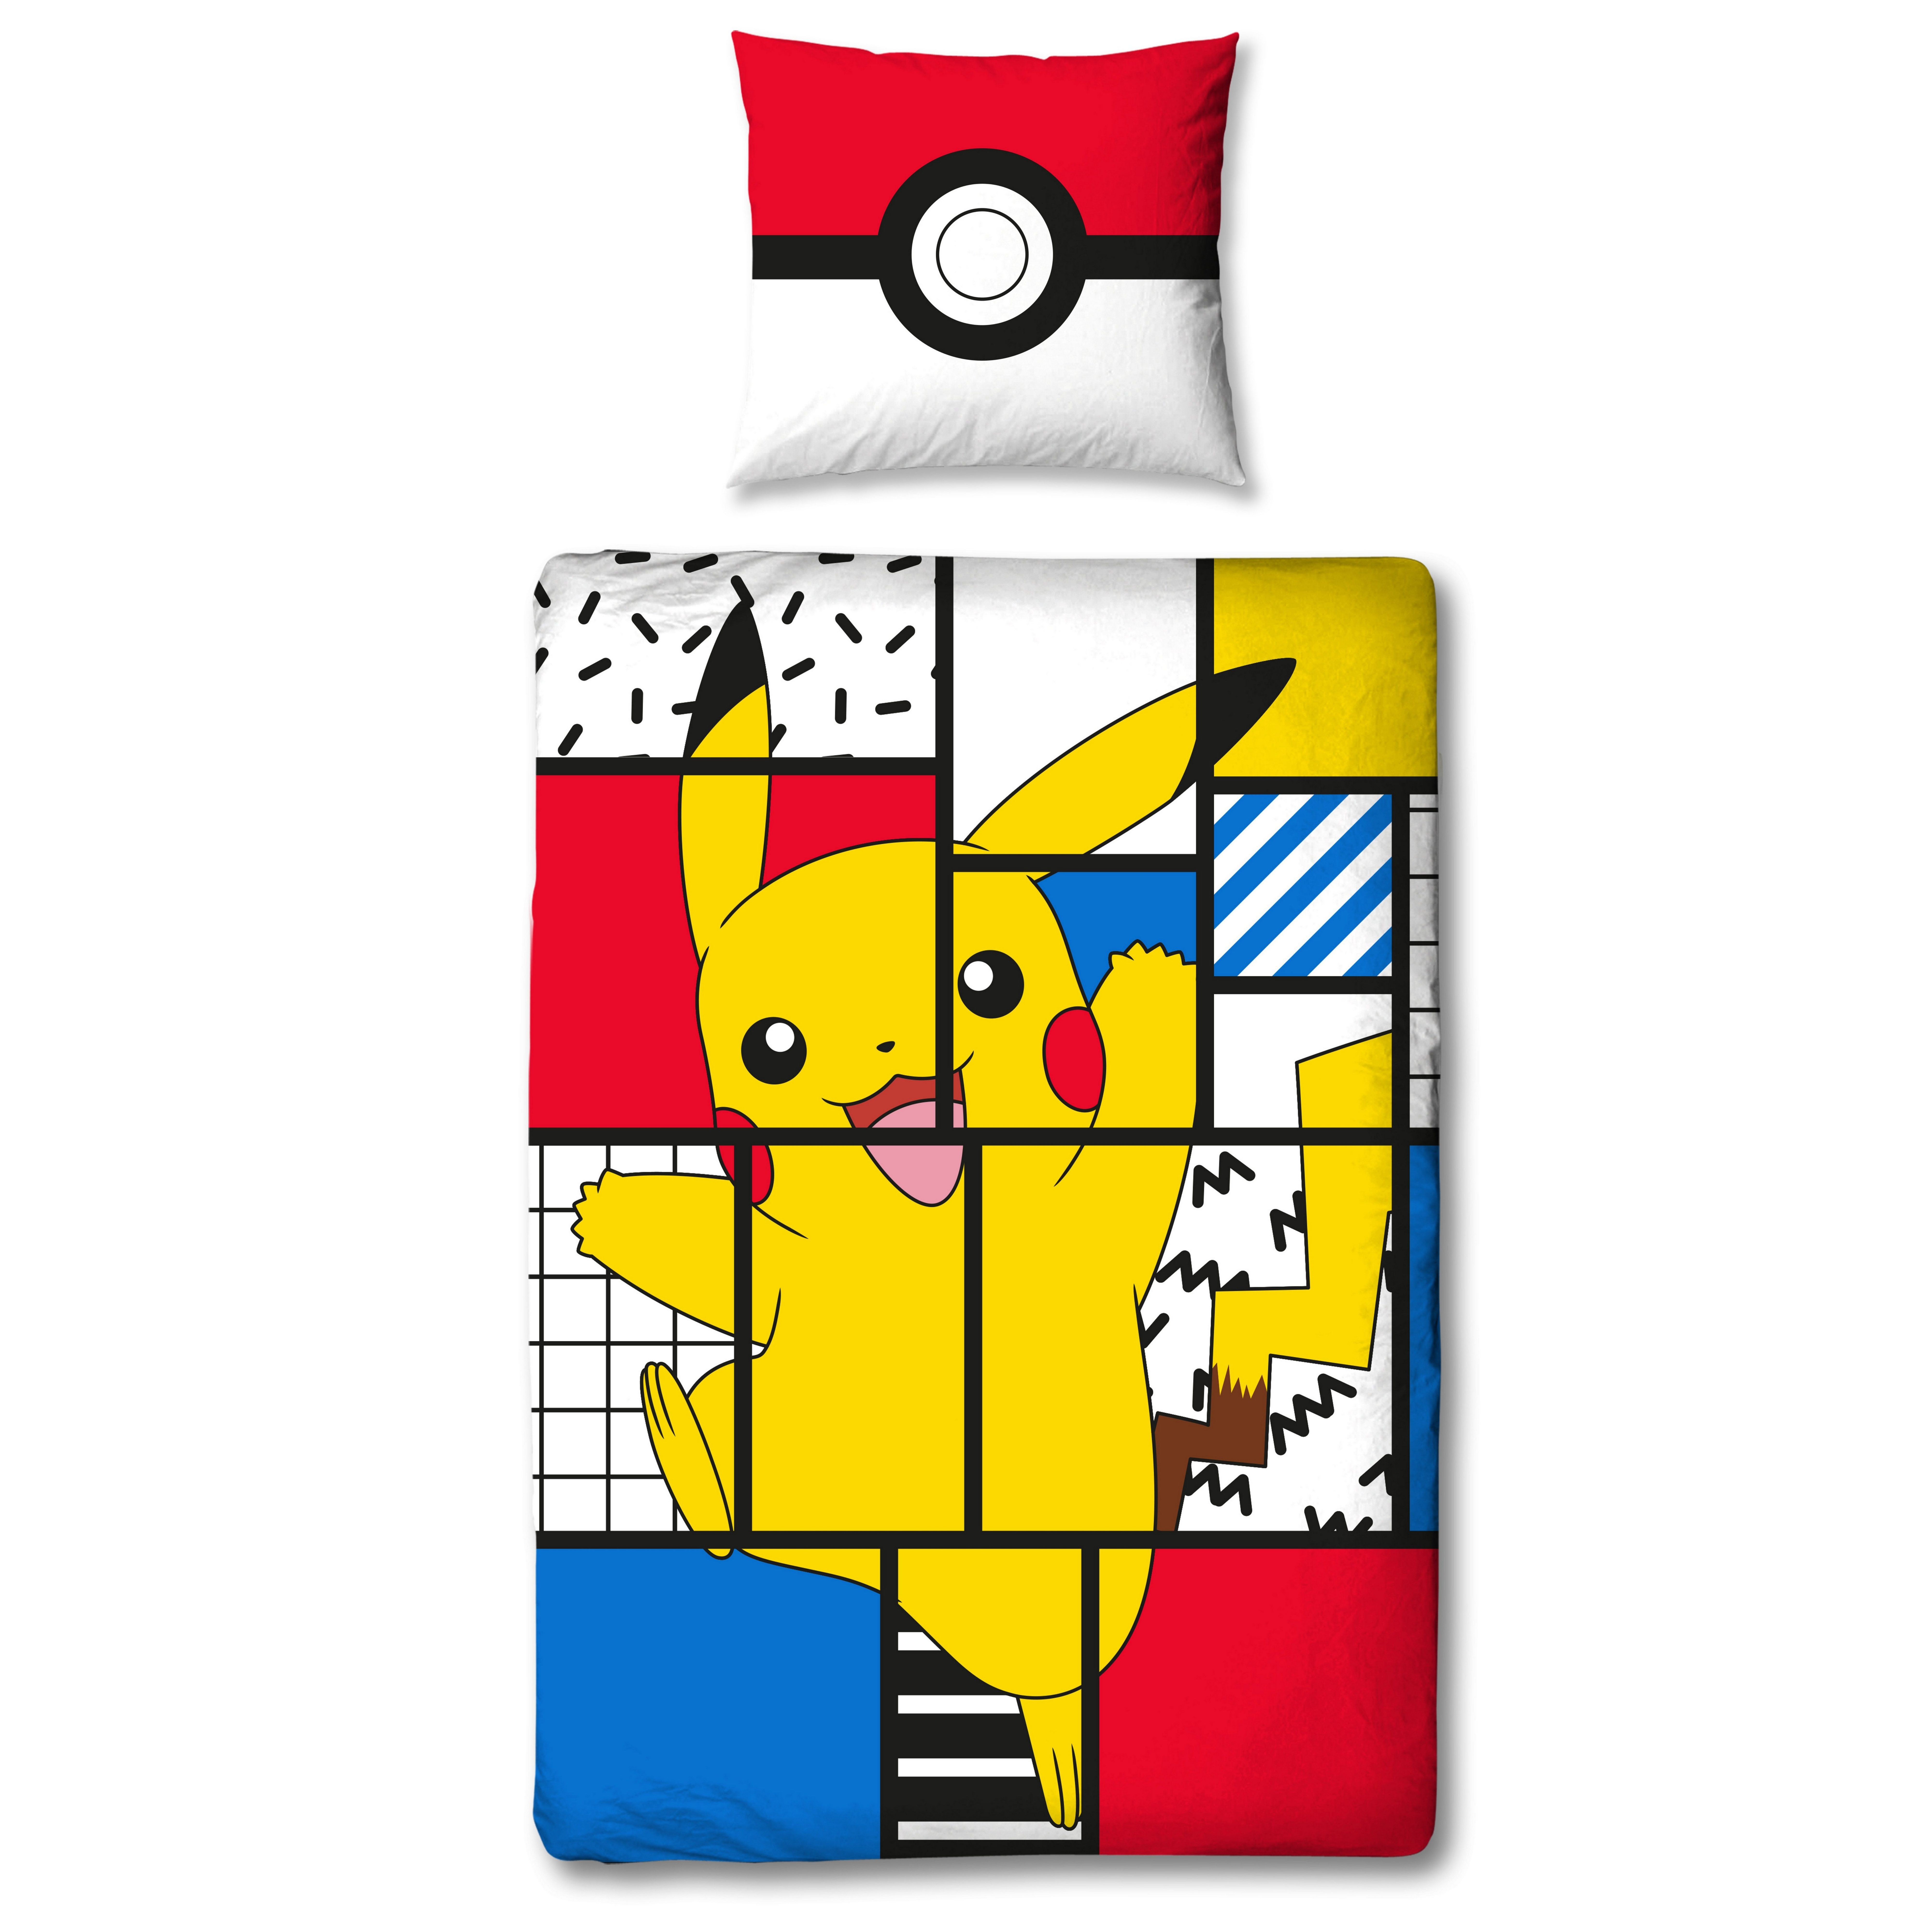 Bettwäsche Pokémon 135x200 + 80x80 cm, 100 % Baumwolle, MTOnlinehandel,  Renforcé, 2 teilig, Pikachu für Kinder, Teenager, Jugend